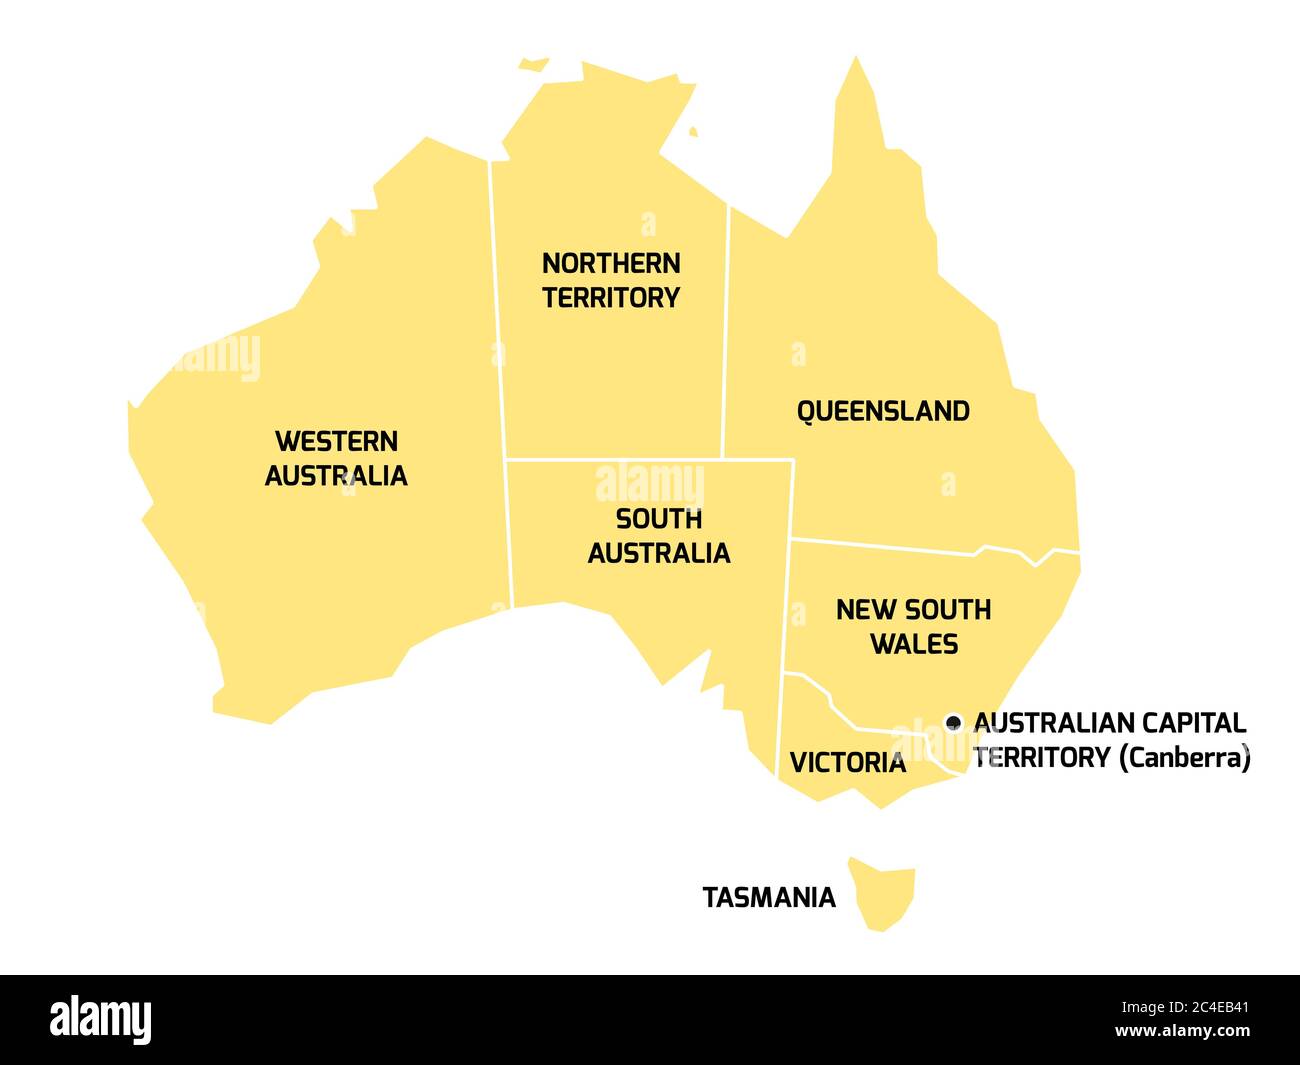 Mappa semplificata dell'Australia divisa in stati e territori. Mappa piatta grigia con bordi bianchi ed etichette nere. Illustrazione Vettoriale